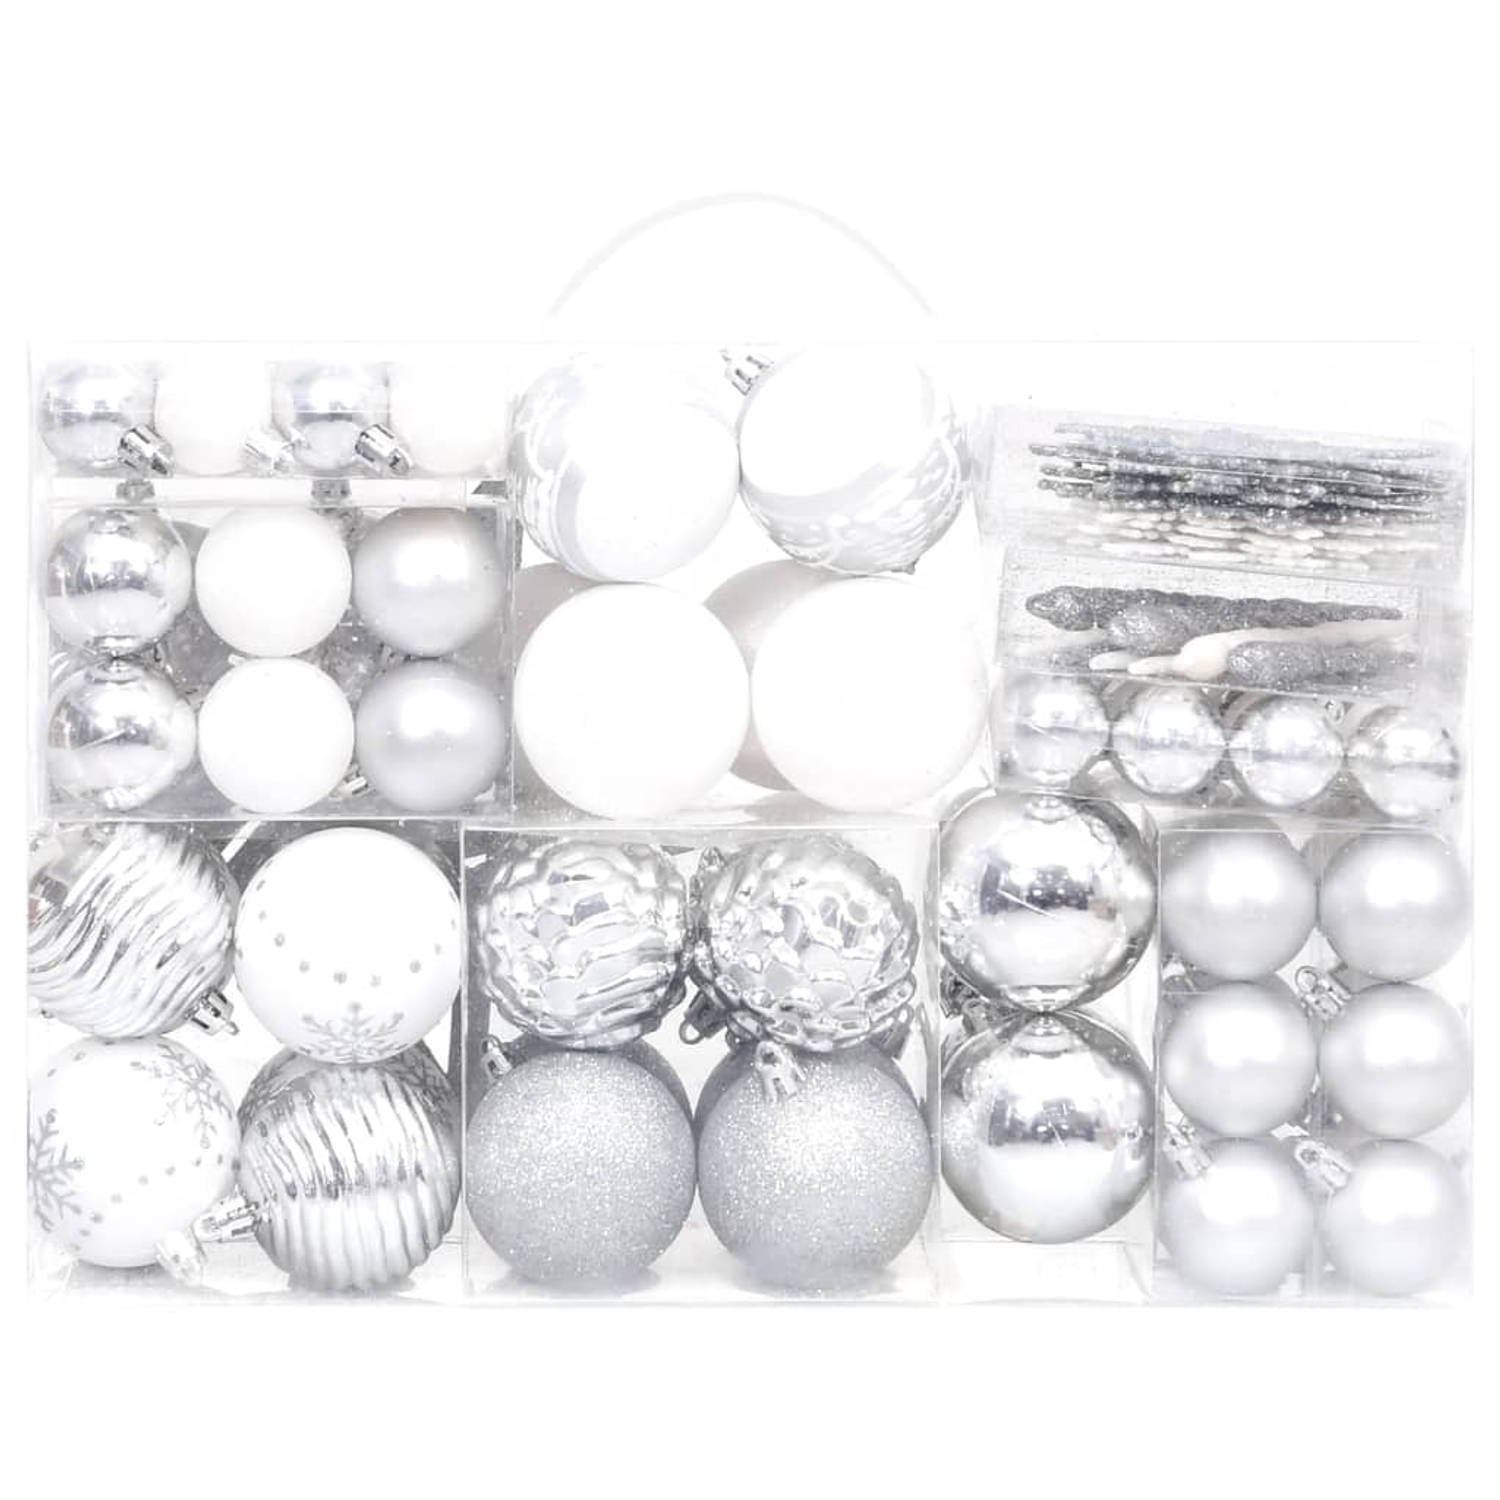 The Living Store Kerstballenset - Onbreekbaar Zilver en Wit - Verschillende maten - Lichtgewicht - Eenvoudig op te bergen - Kunststof